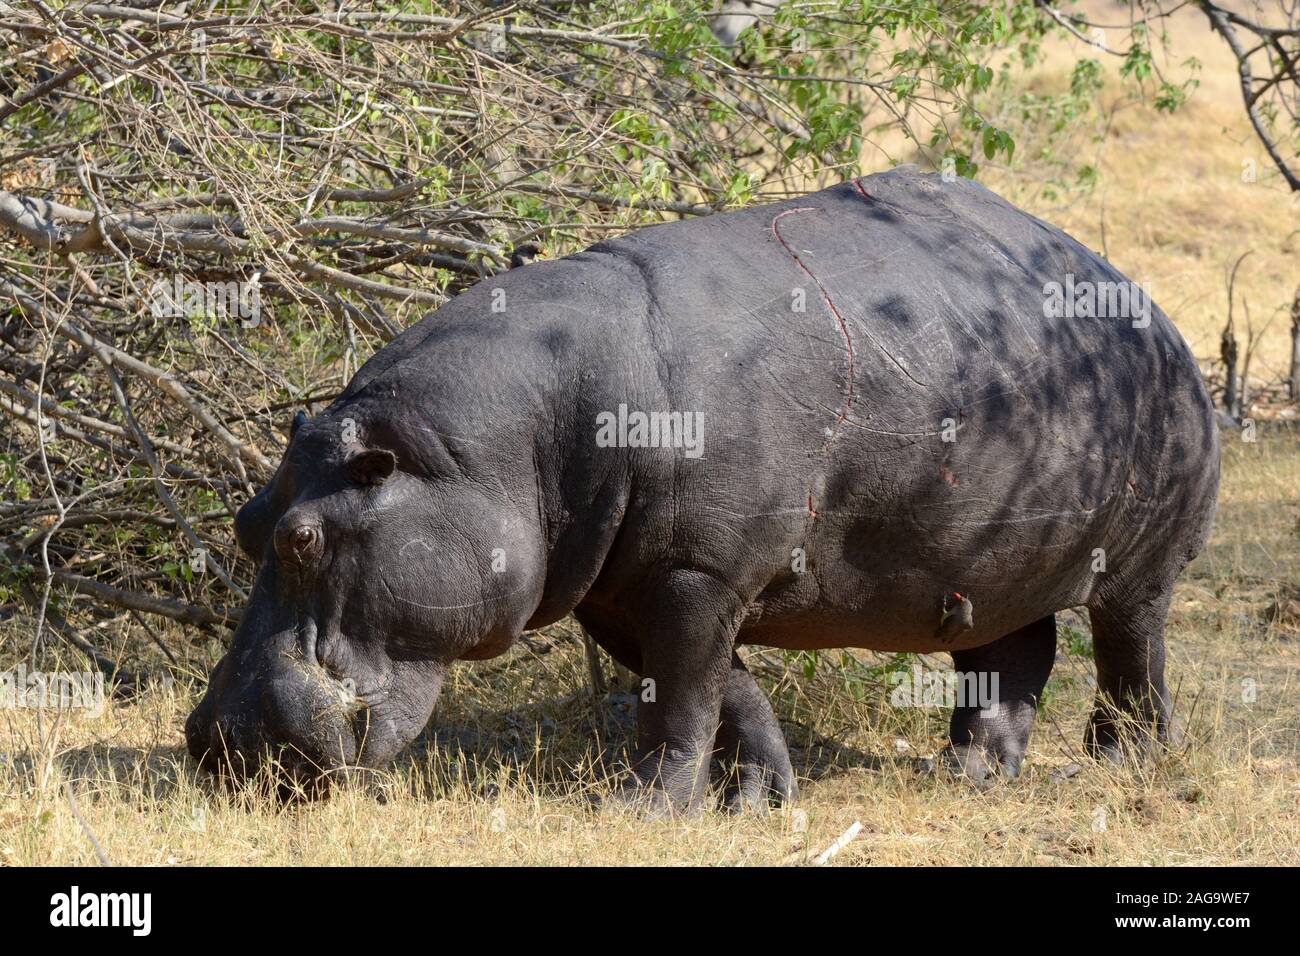 Pâturage d'hippopotame marques montrant des dommages à la peau du parc national de Moremi Game Reserve Afrique Botswana Banque D'Images